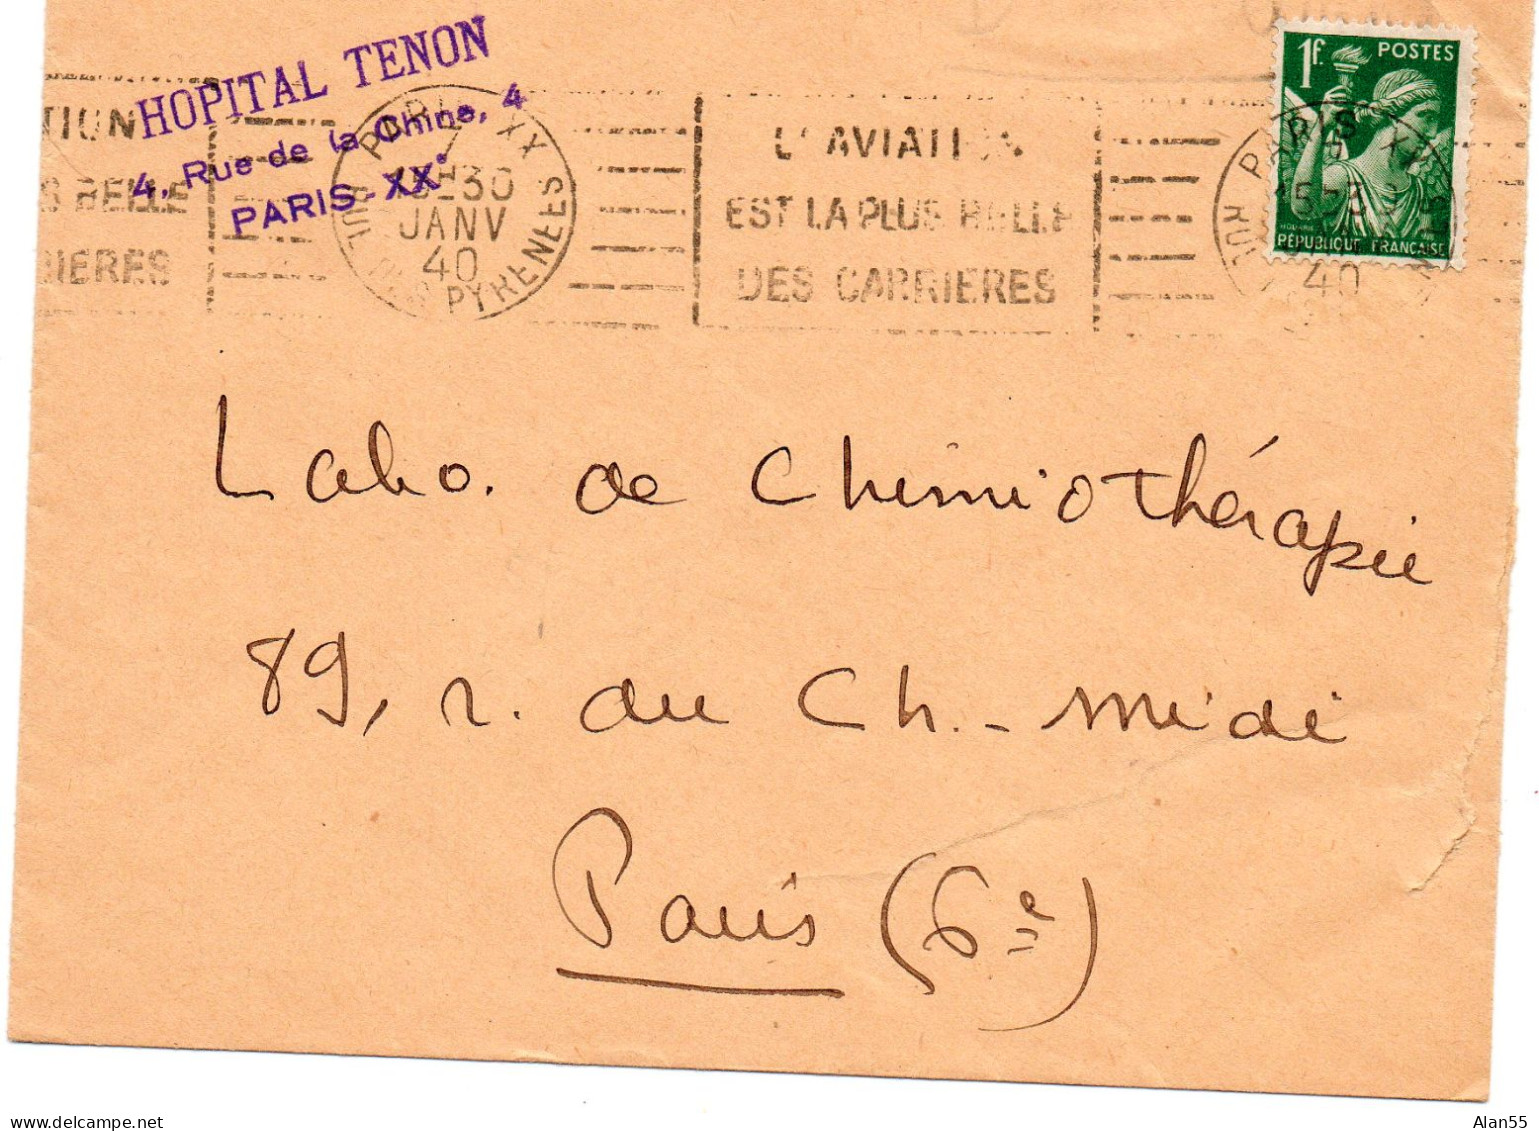 FRANCE.1940. (GUERRE). "HOPITAL TENON"."L'AVIATION LA PLUS BELLE DES CARRIERES". TYPE:"IRIS".PARIS (SEINE) - Cartas & Documentos